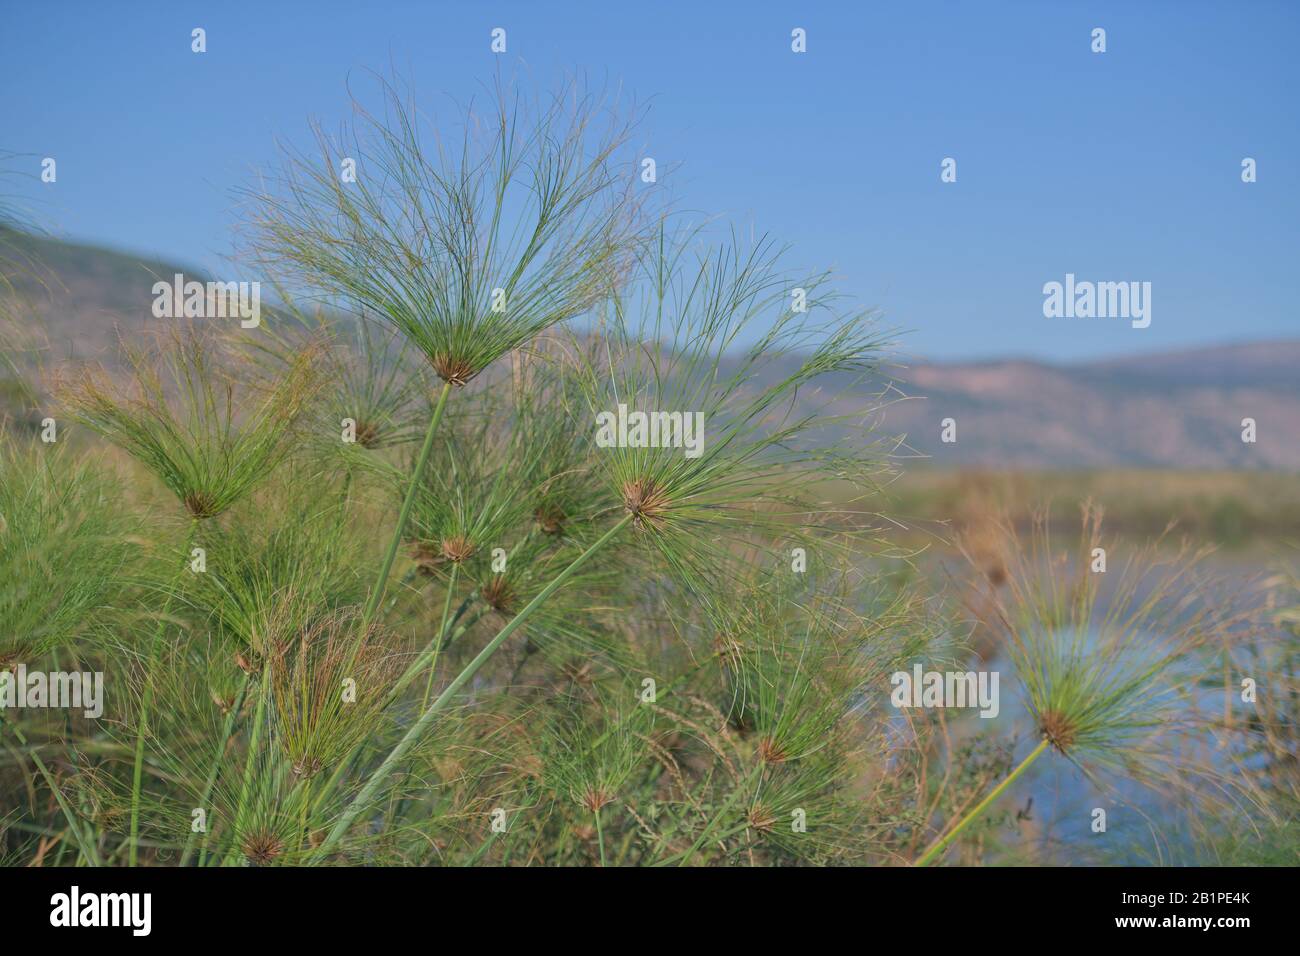 Papyruspflanze (Cyperus Papyrus) Sümpfe, Naturschutzgebiet Hula, Israele Foto Stock